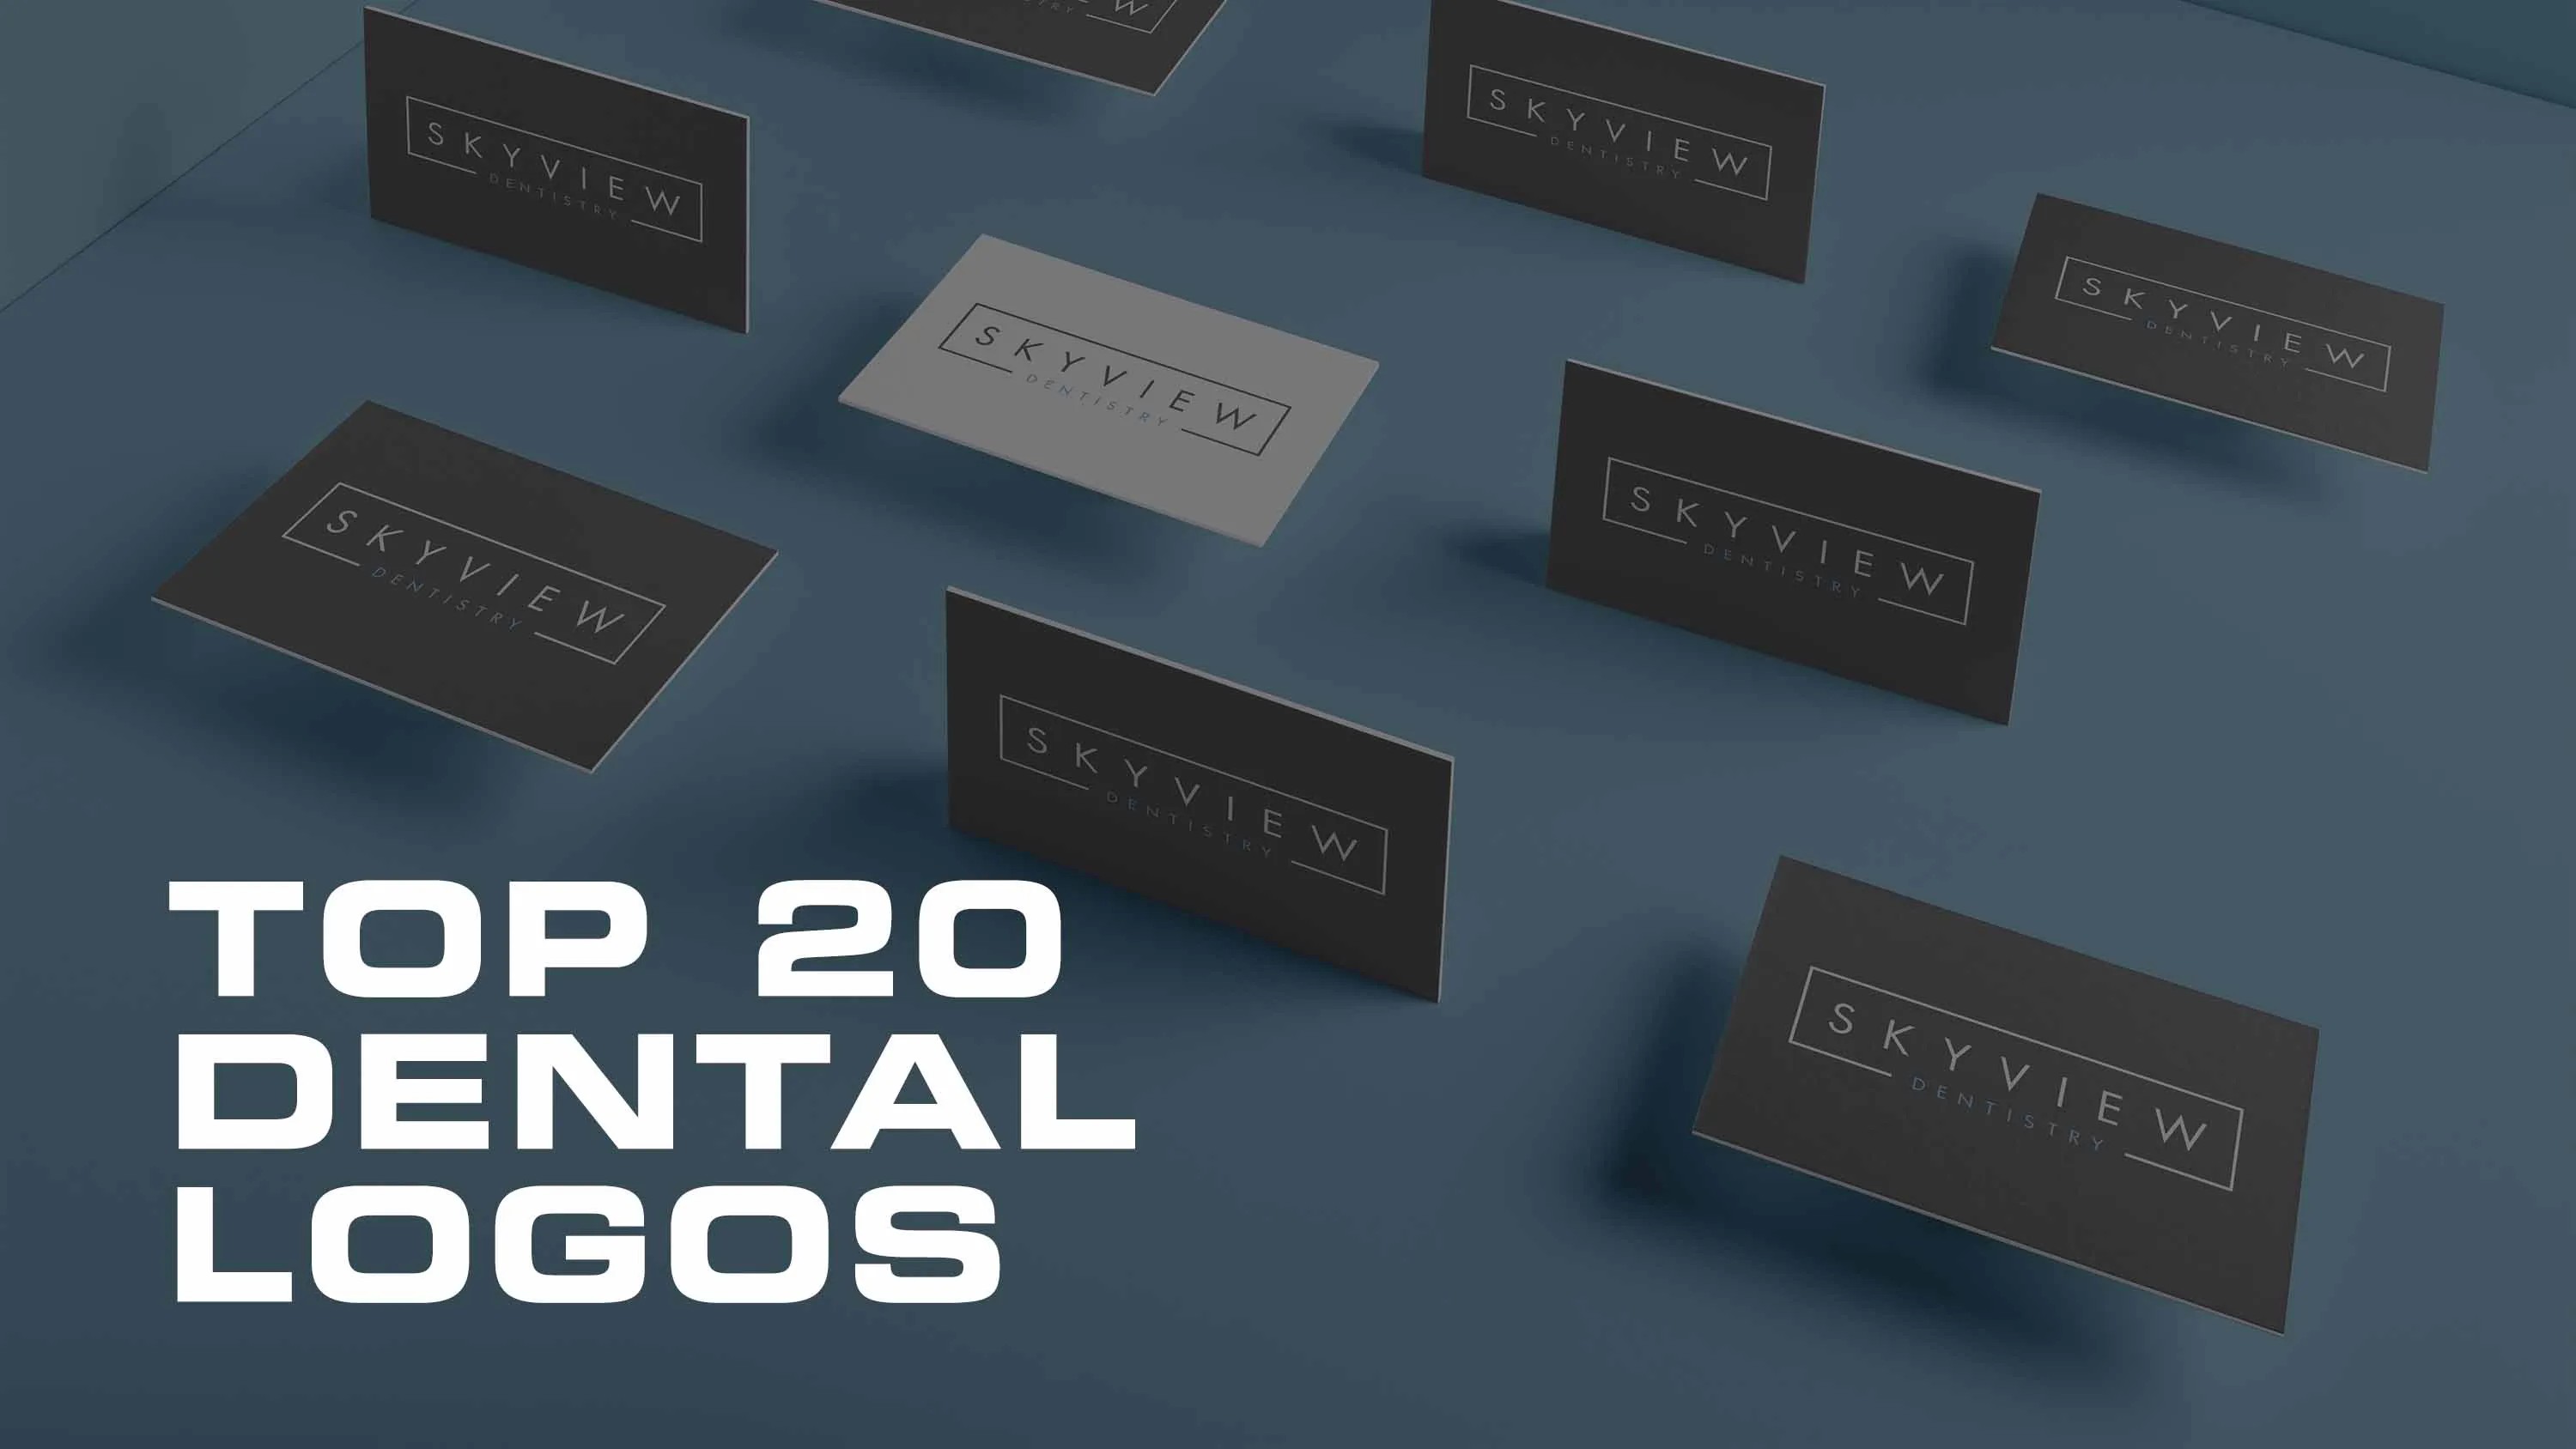 Top 20 dental logos